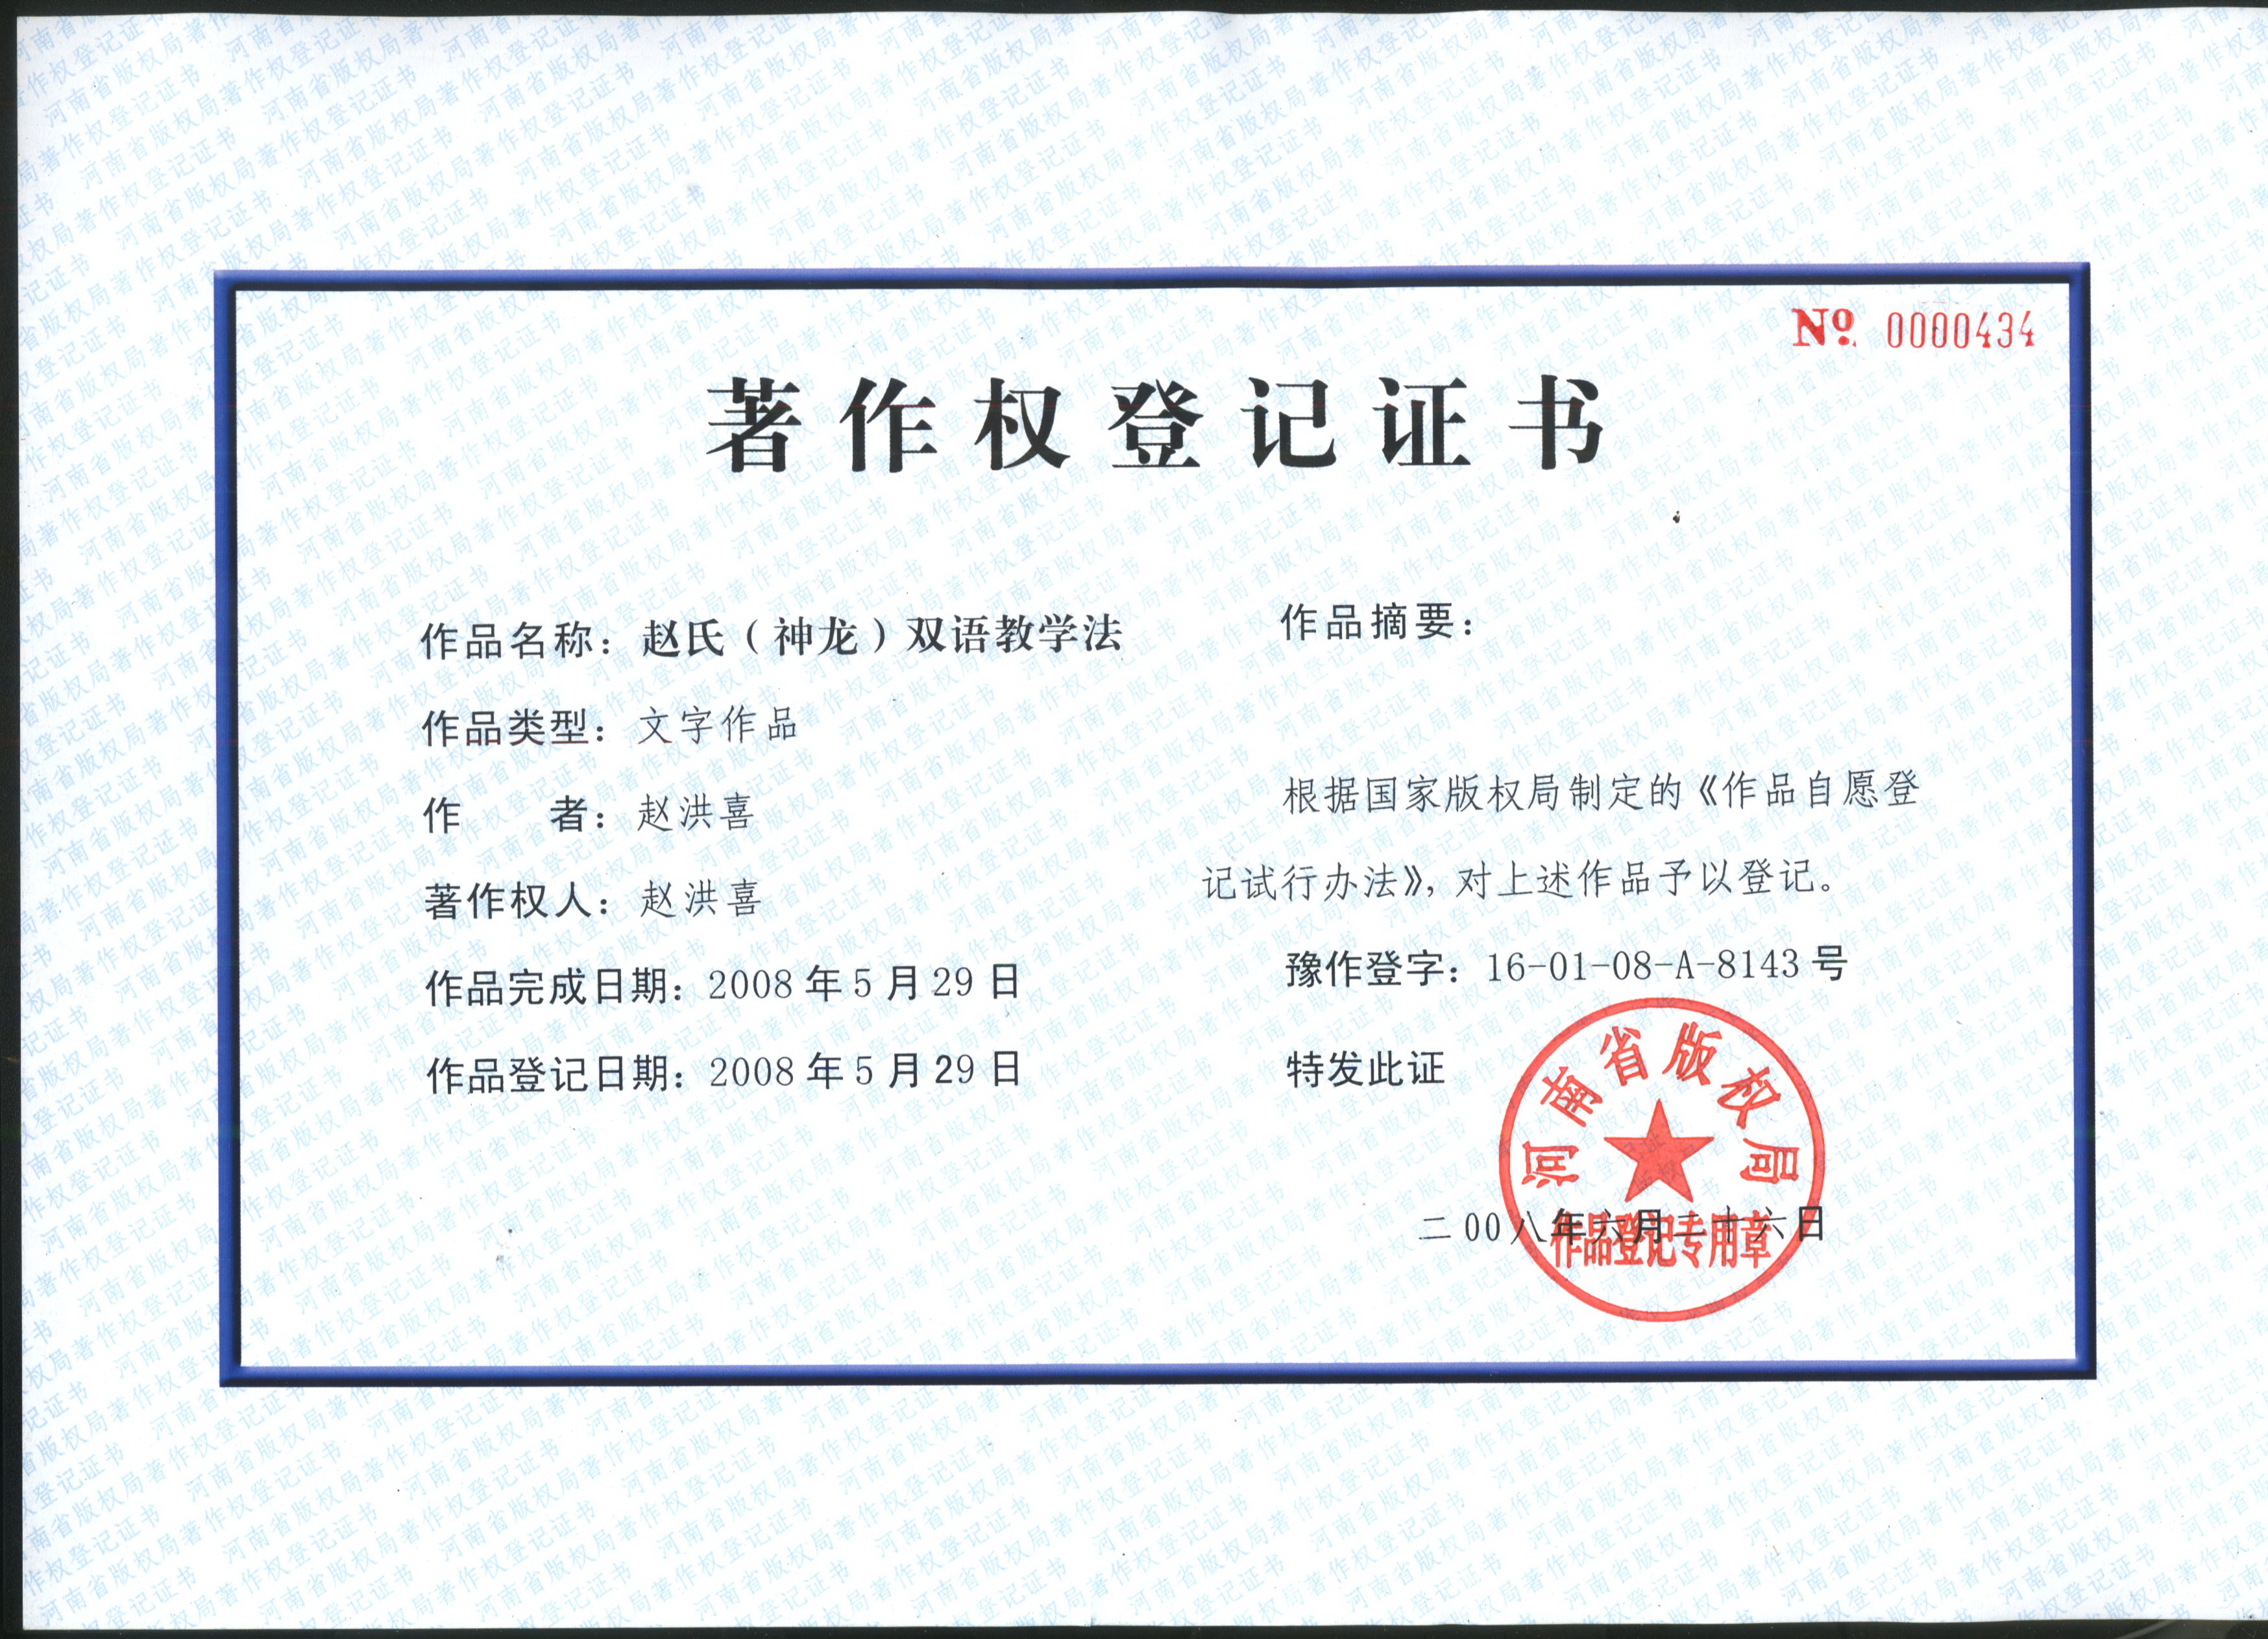 神龙英语公众号更新资料-著作登记证书